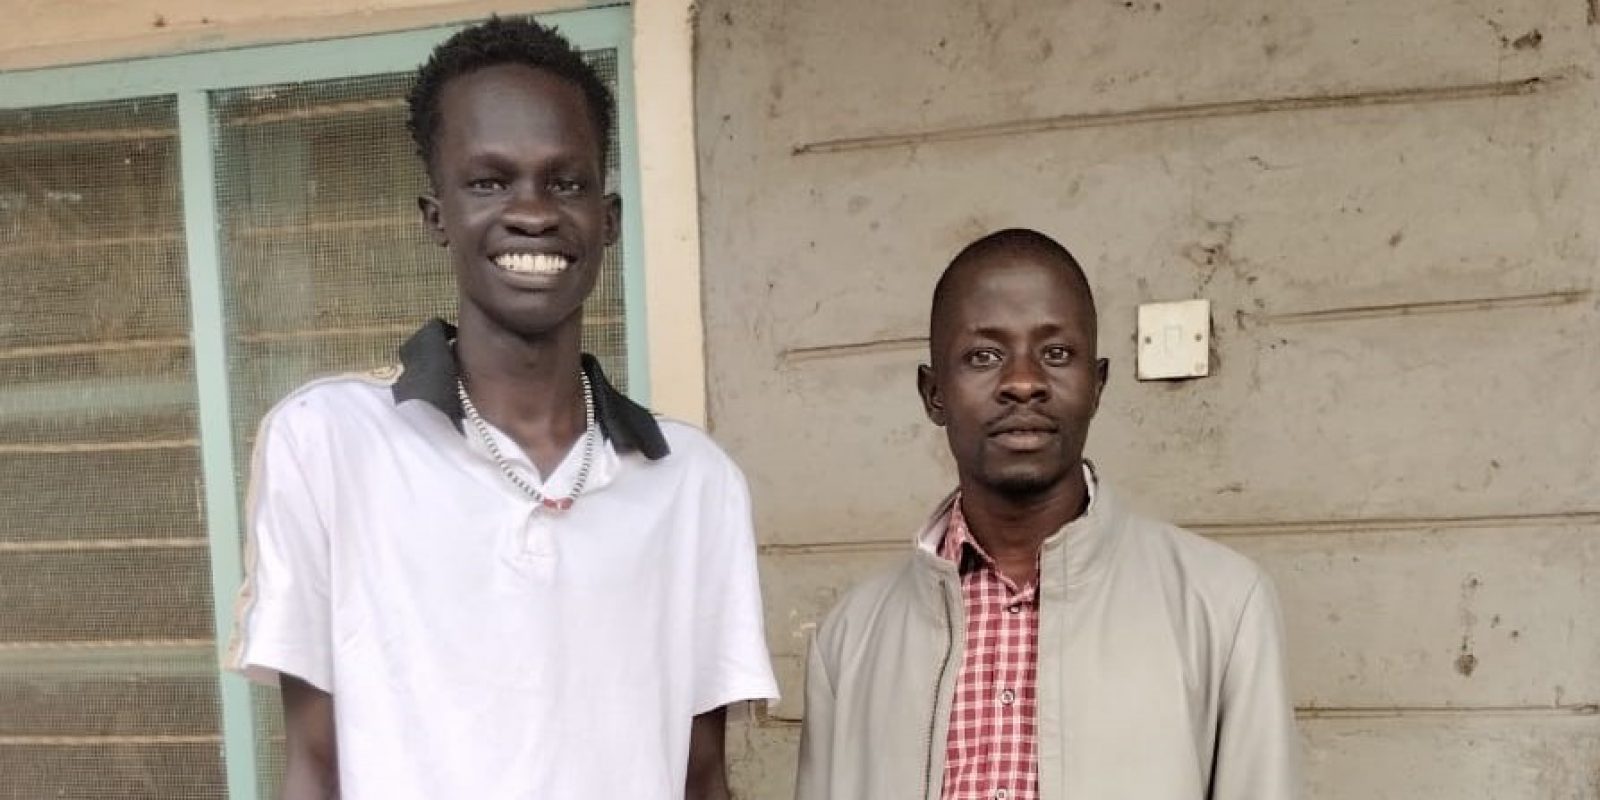 Les formations numérique organisées dans le camp de réfugiés de Kakuma permettent aux formateurs réfugiés d'améliorer leur autosuffisance. Taban et Juma, deux jeunes étudiants réfugiés qui ont participé au programme de Formation des Formateurs (FdF) organisé dans le camp de réfugiés de Kakuma .